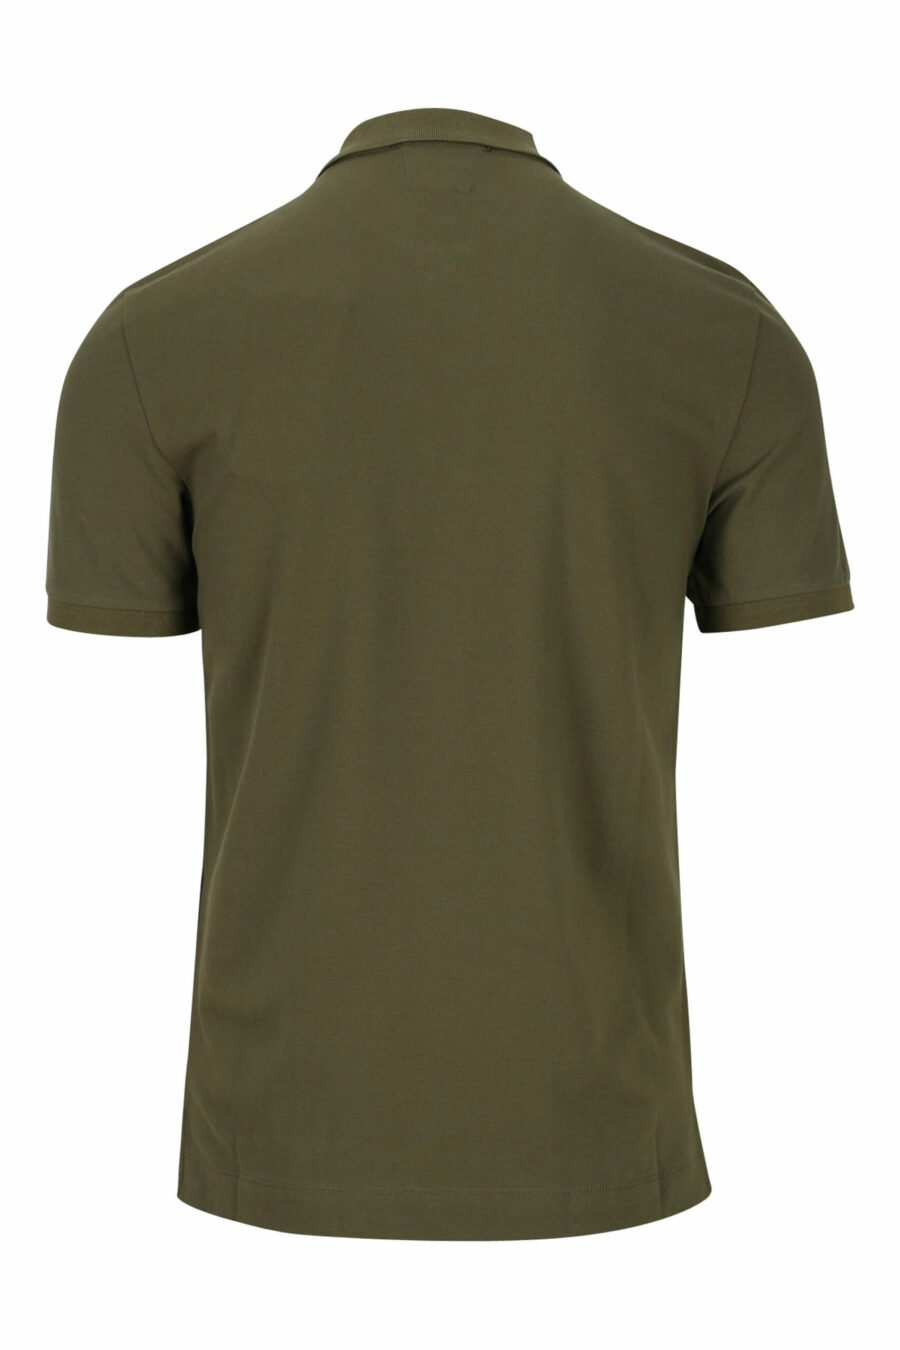 Militärgrünes Poloshirt mit Mini-Logoaufnäher - 7620943625691 1 skaliert